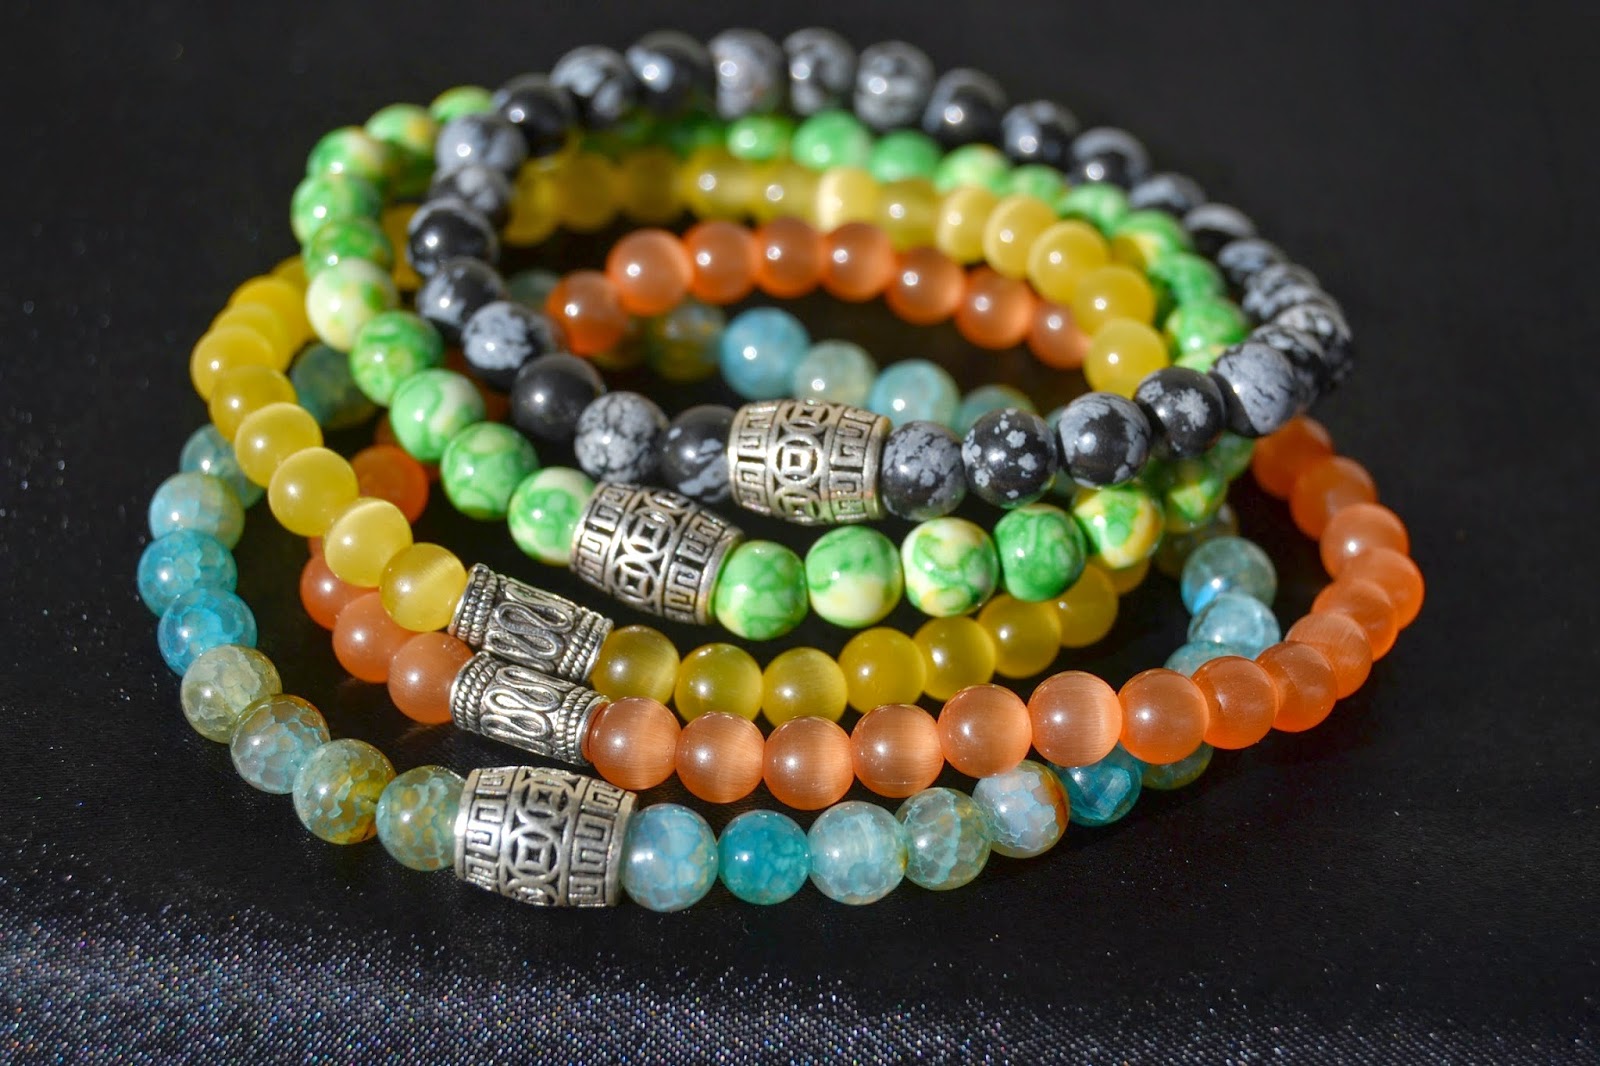 http://www.syriouslyinfashion.com/2014/12/nonagons-colorful-stylish-bracelets.html